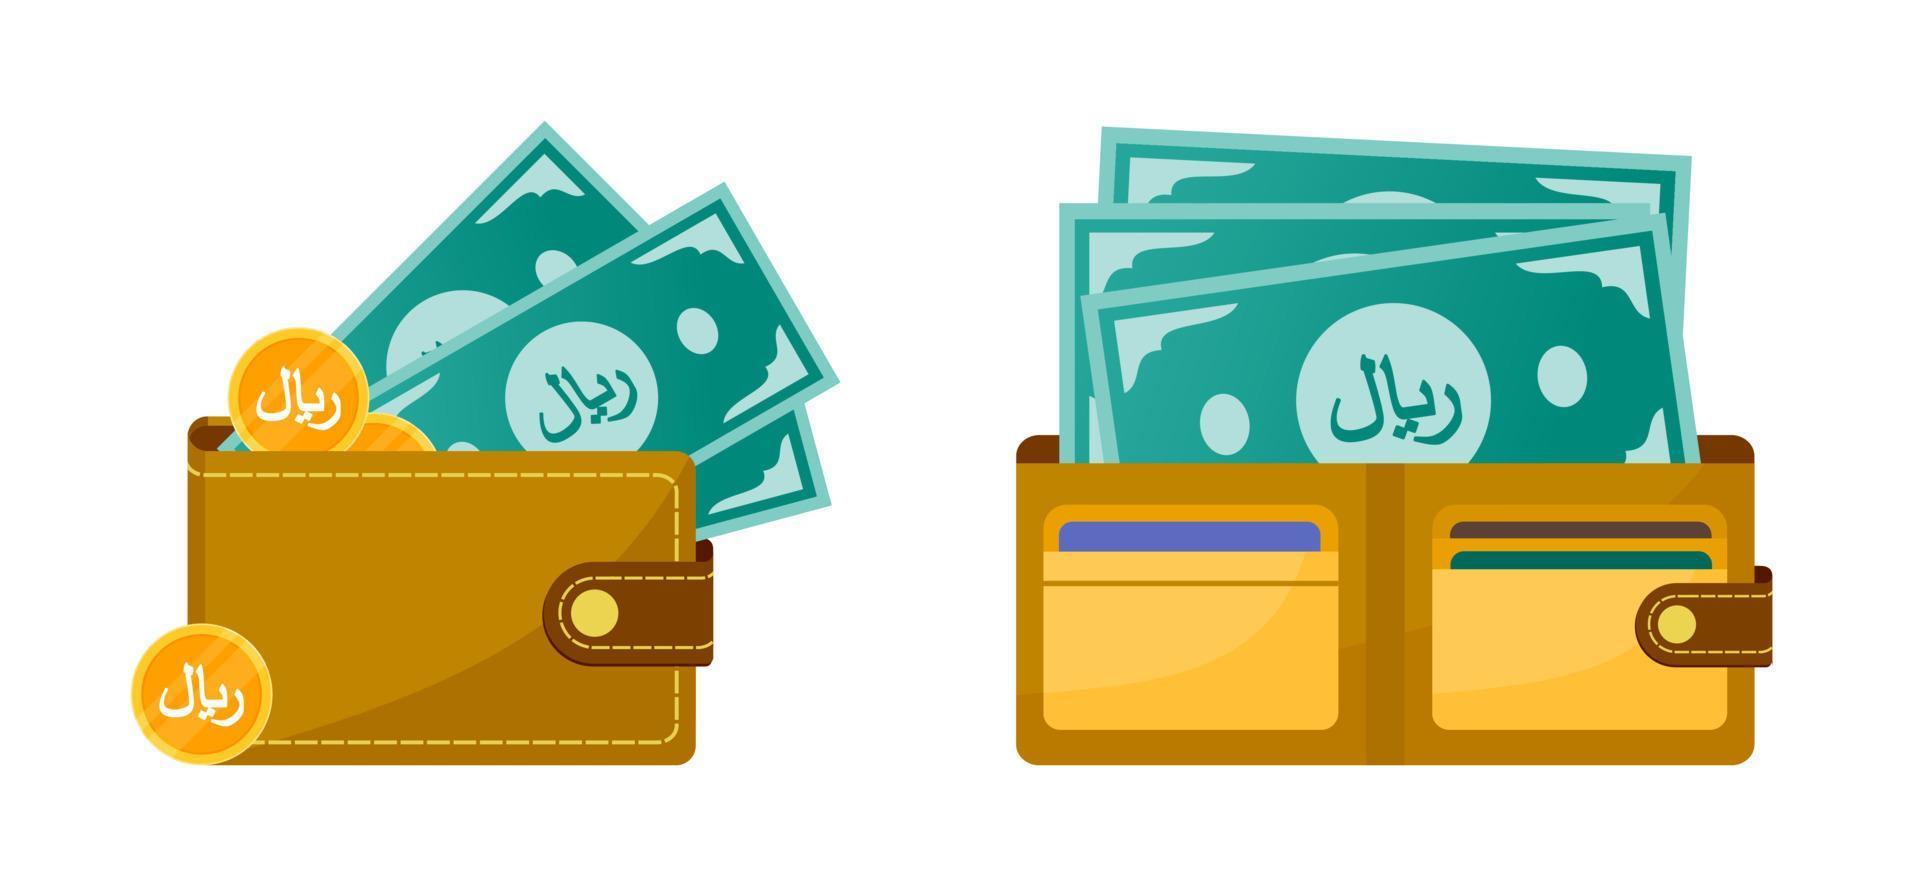 Wallet with Saudi Riyal Money vector